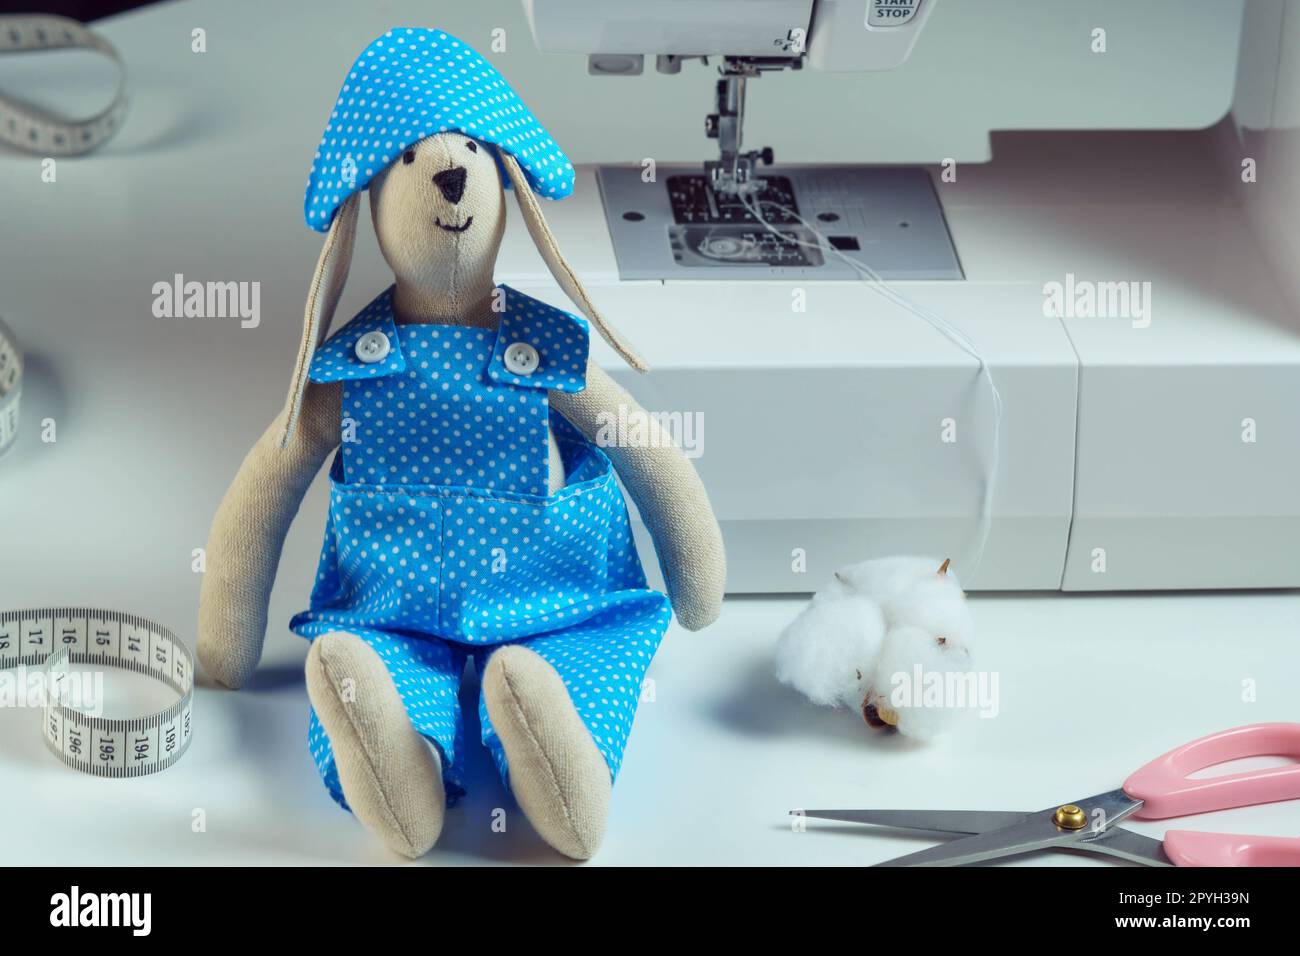 Drôle souriant jouet lapin en peluche cousu dans une combinaison bleue, chapeau armé, assis près du coton, ciseaux, à côté de la machine à coudre Banque D'Images